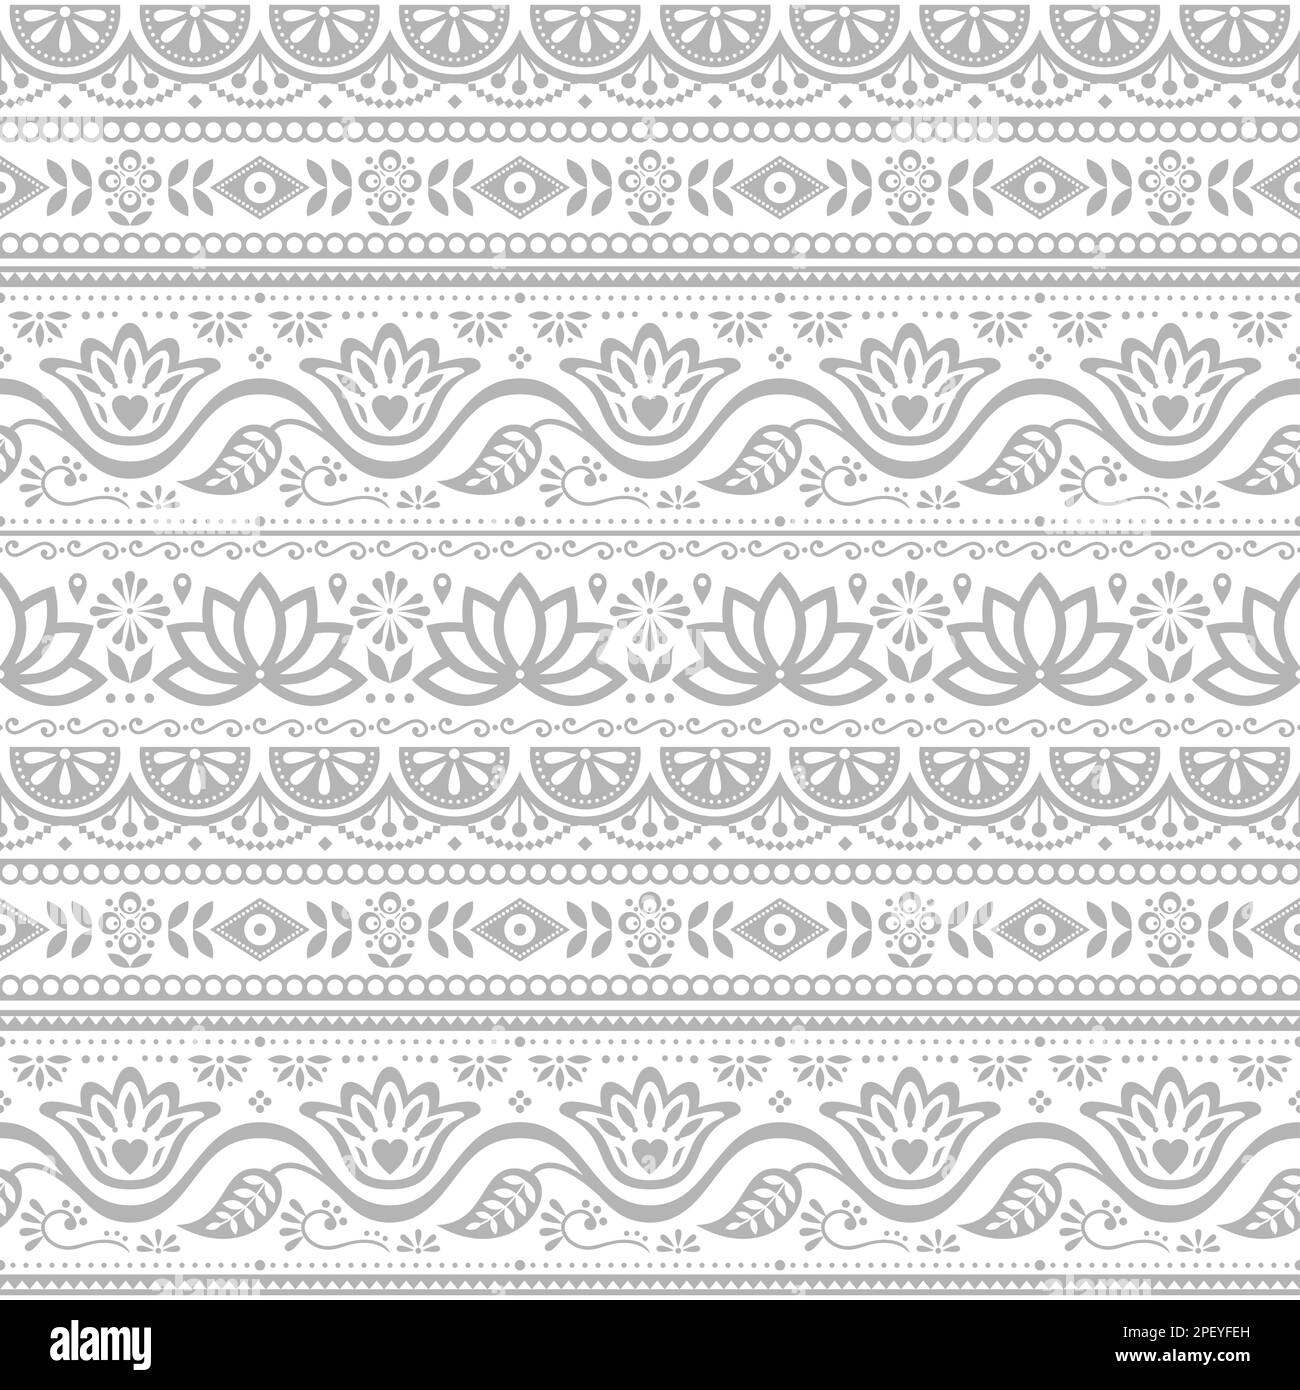 Pakistanische Lkw kunst Vektor nahtlose Muster, Indischen Lkw Blumen Schwarz-weiß Design mit Lotus Blumen, Blätter und abstrakten Formen Stock Vektor